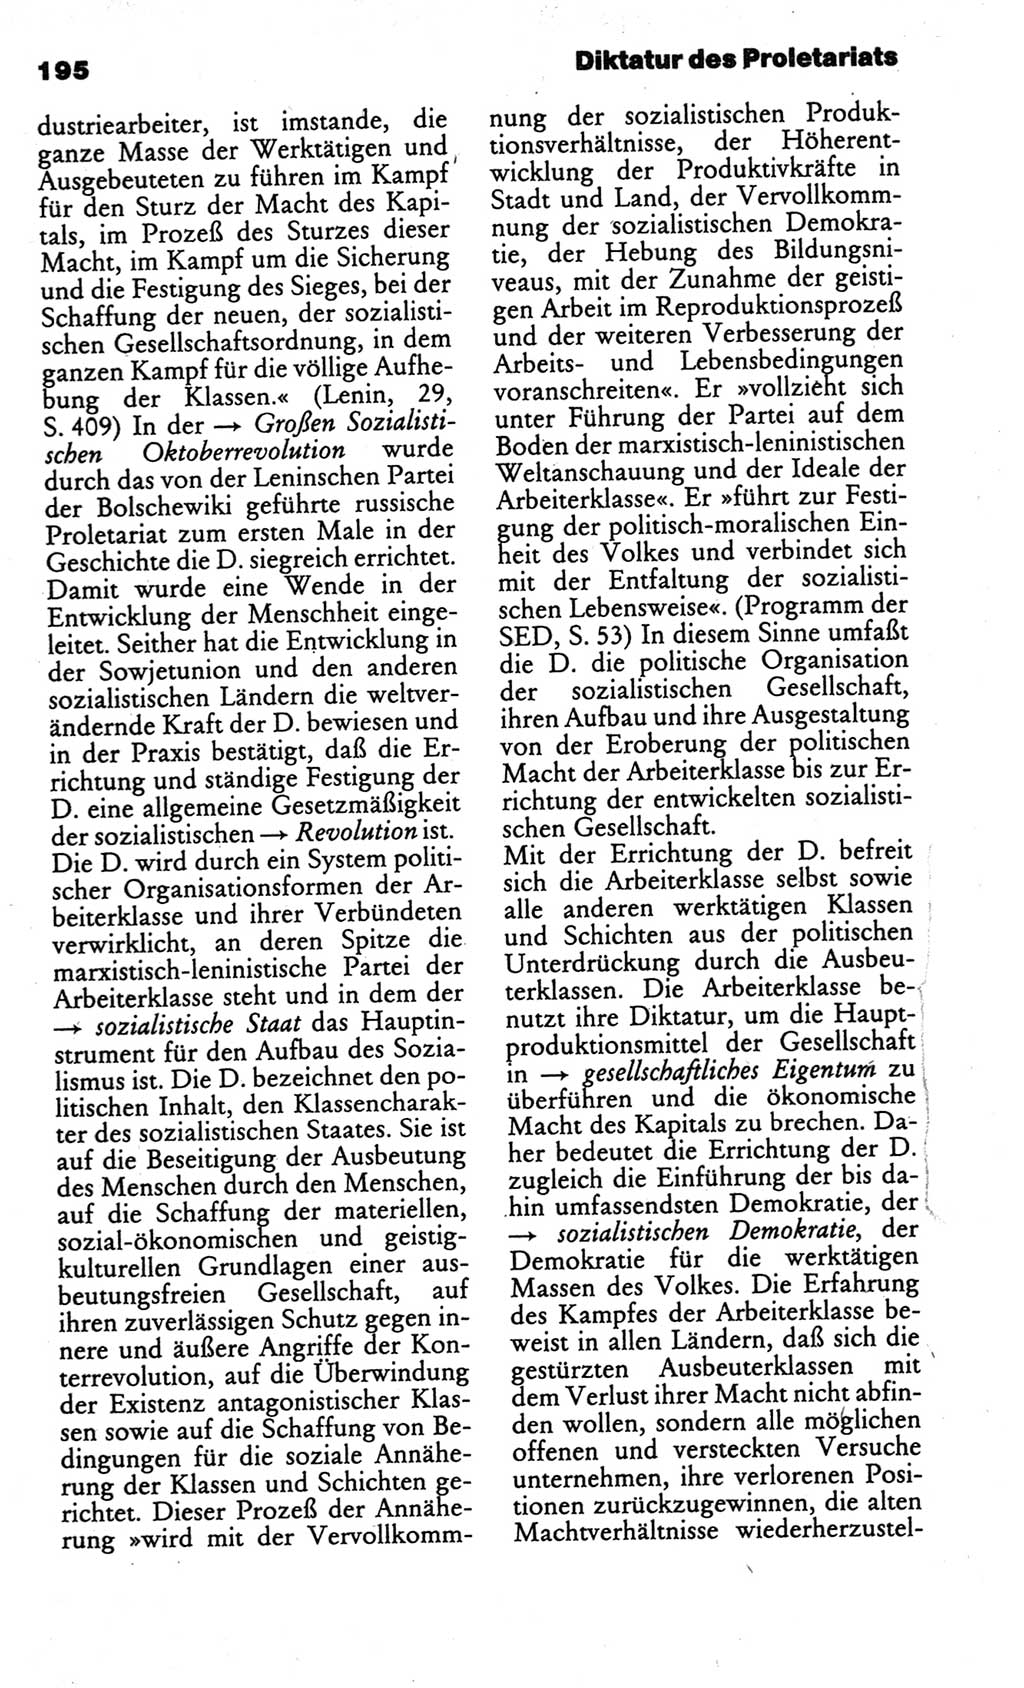 Kleines politisches Wörterbuch [Deutsche Demokratische Republik (DDR)] 1986, Seite 195 (Kl. pol. Wb. DDR 1986, S. 195)